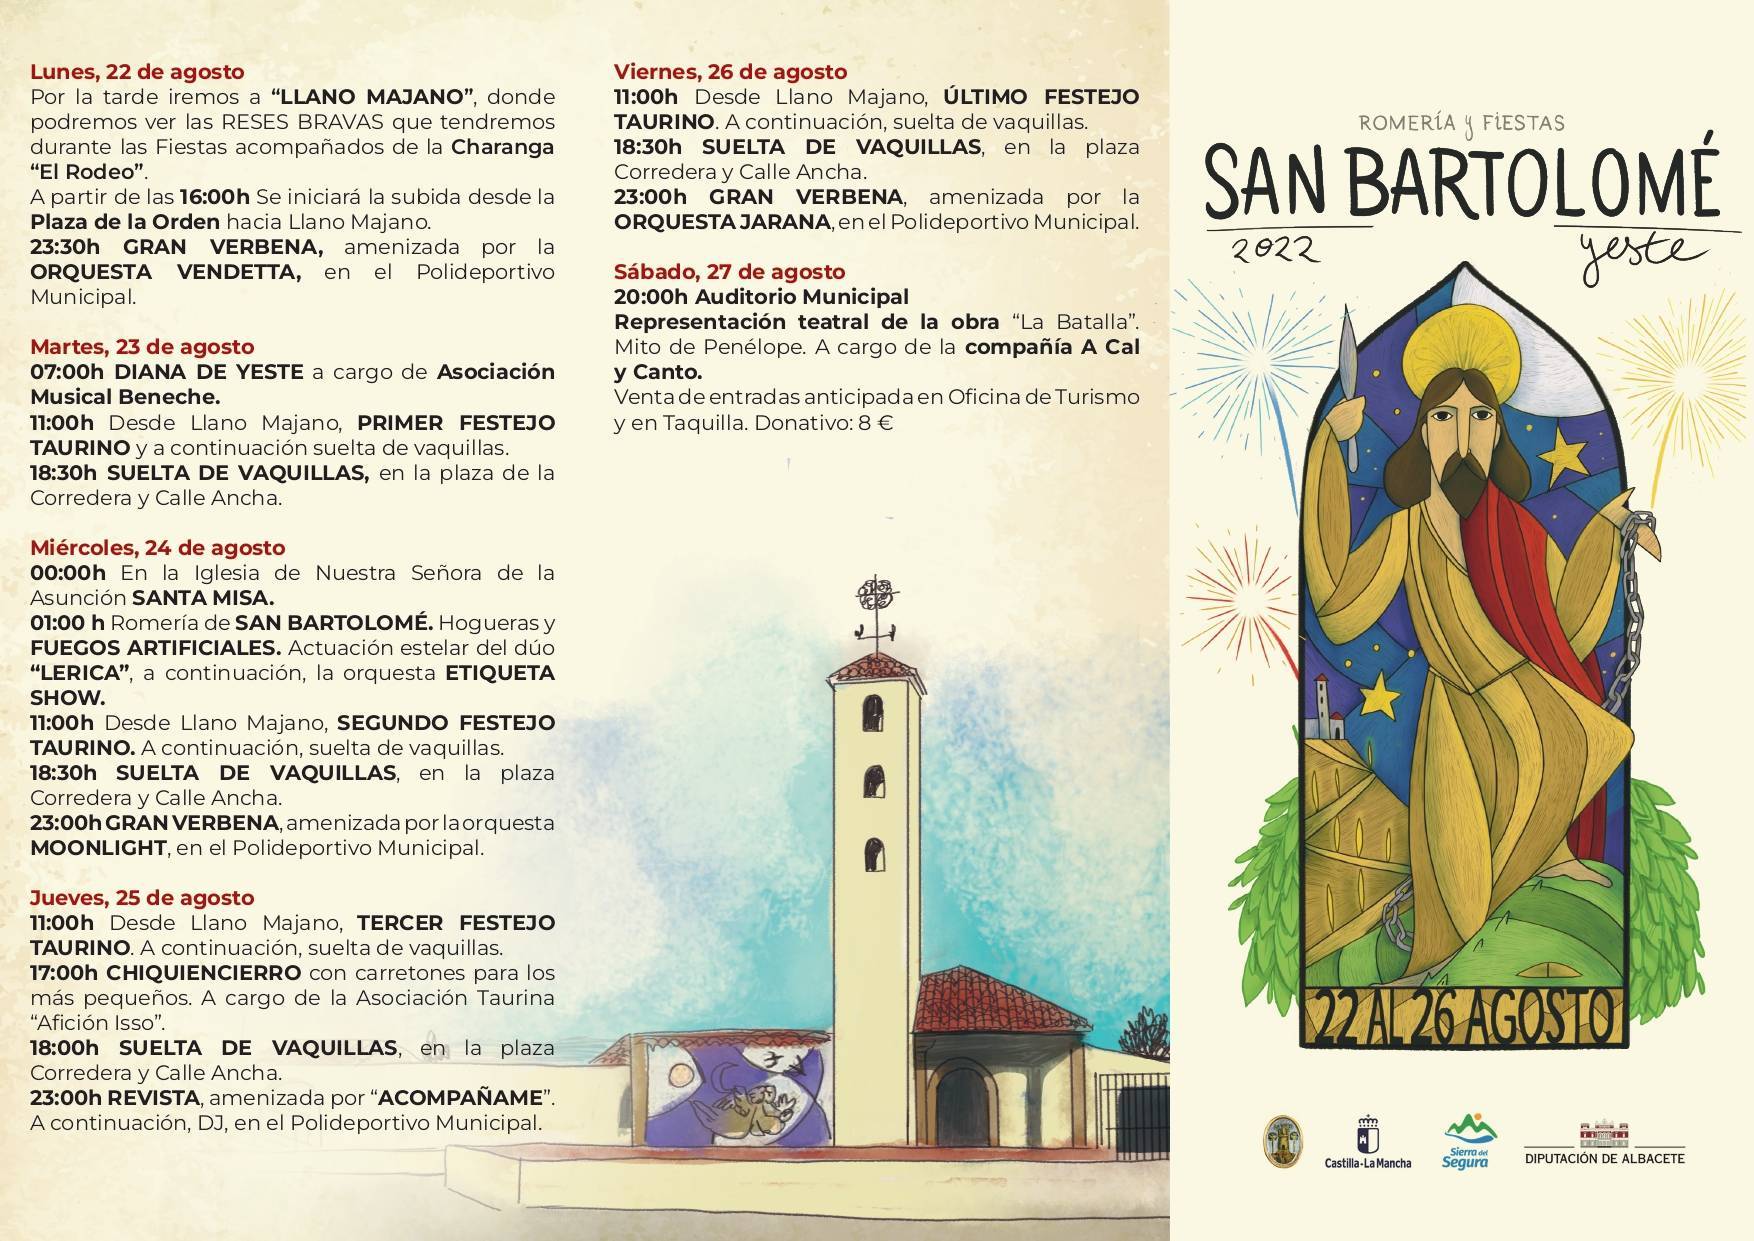 Romería y fiestas de San Bartolomé (2022) - Yeste (Albacete) 1